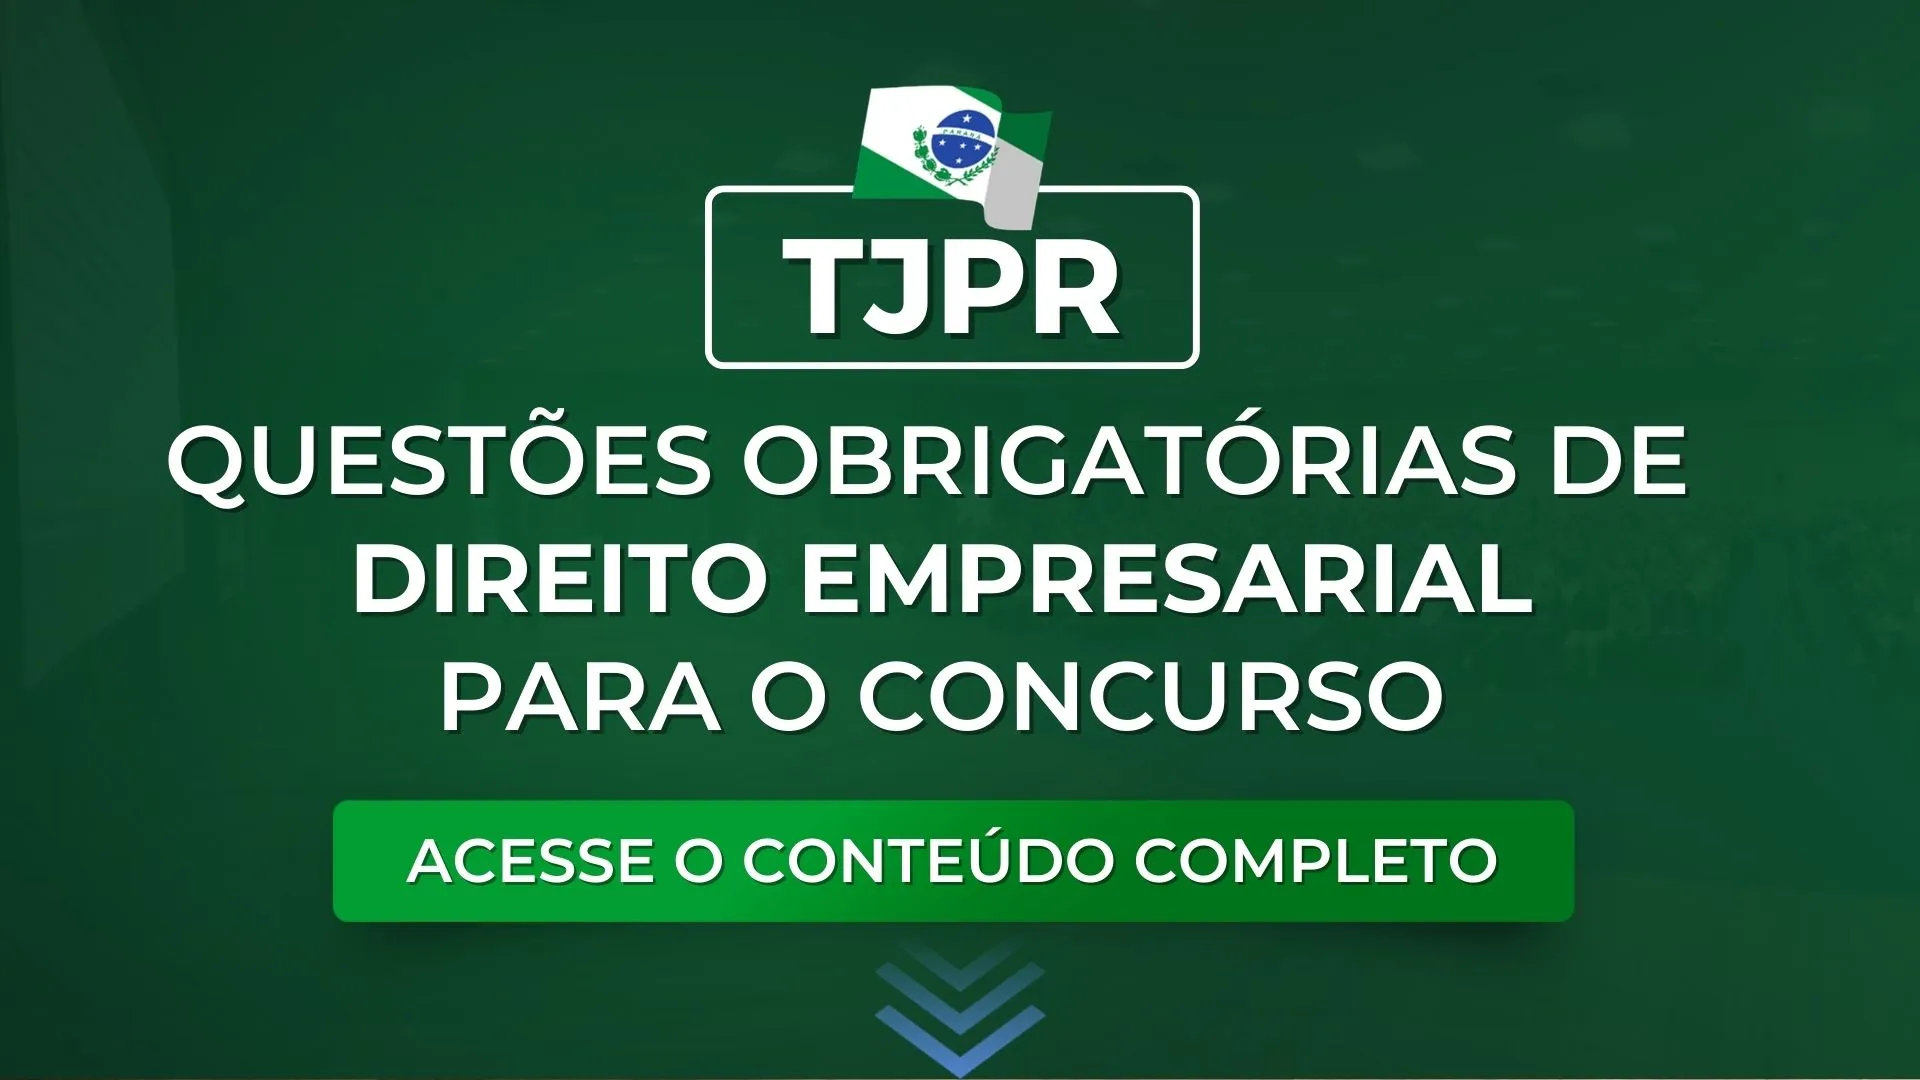 TJPR: Questões obrigatórias de Direito Empresarial para o concurso